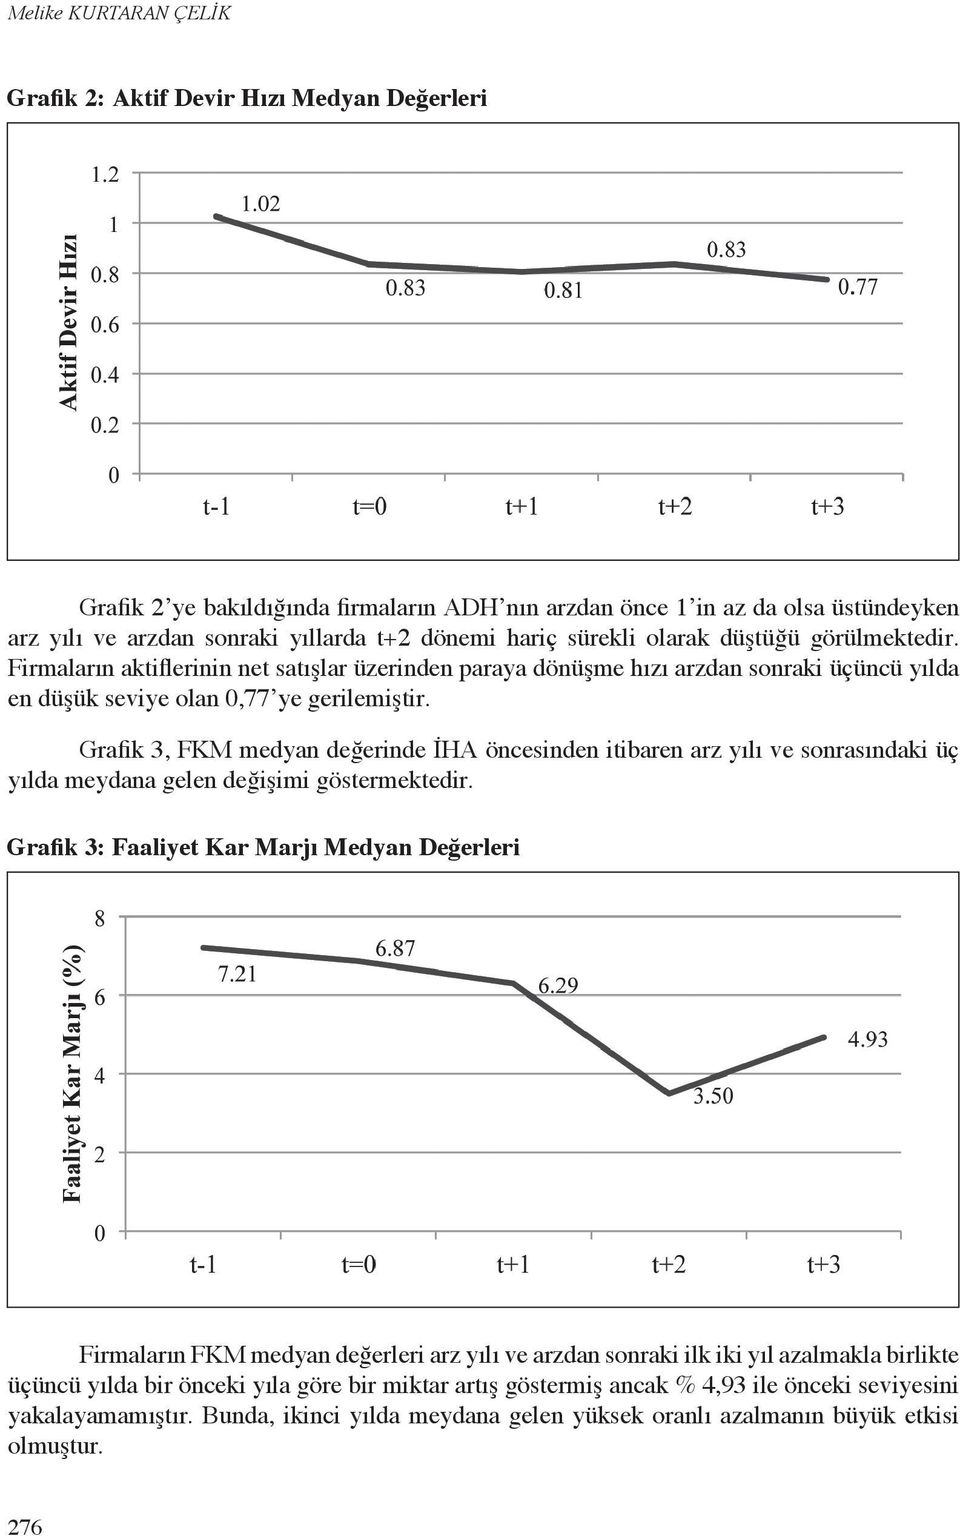 Grafik 3, FKM medyan değerinde İHA öncesinden itibaren arz yılı ve sonrasındaki üç yılda meydana gelen değişimi göstermektedir.